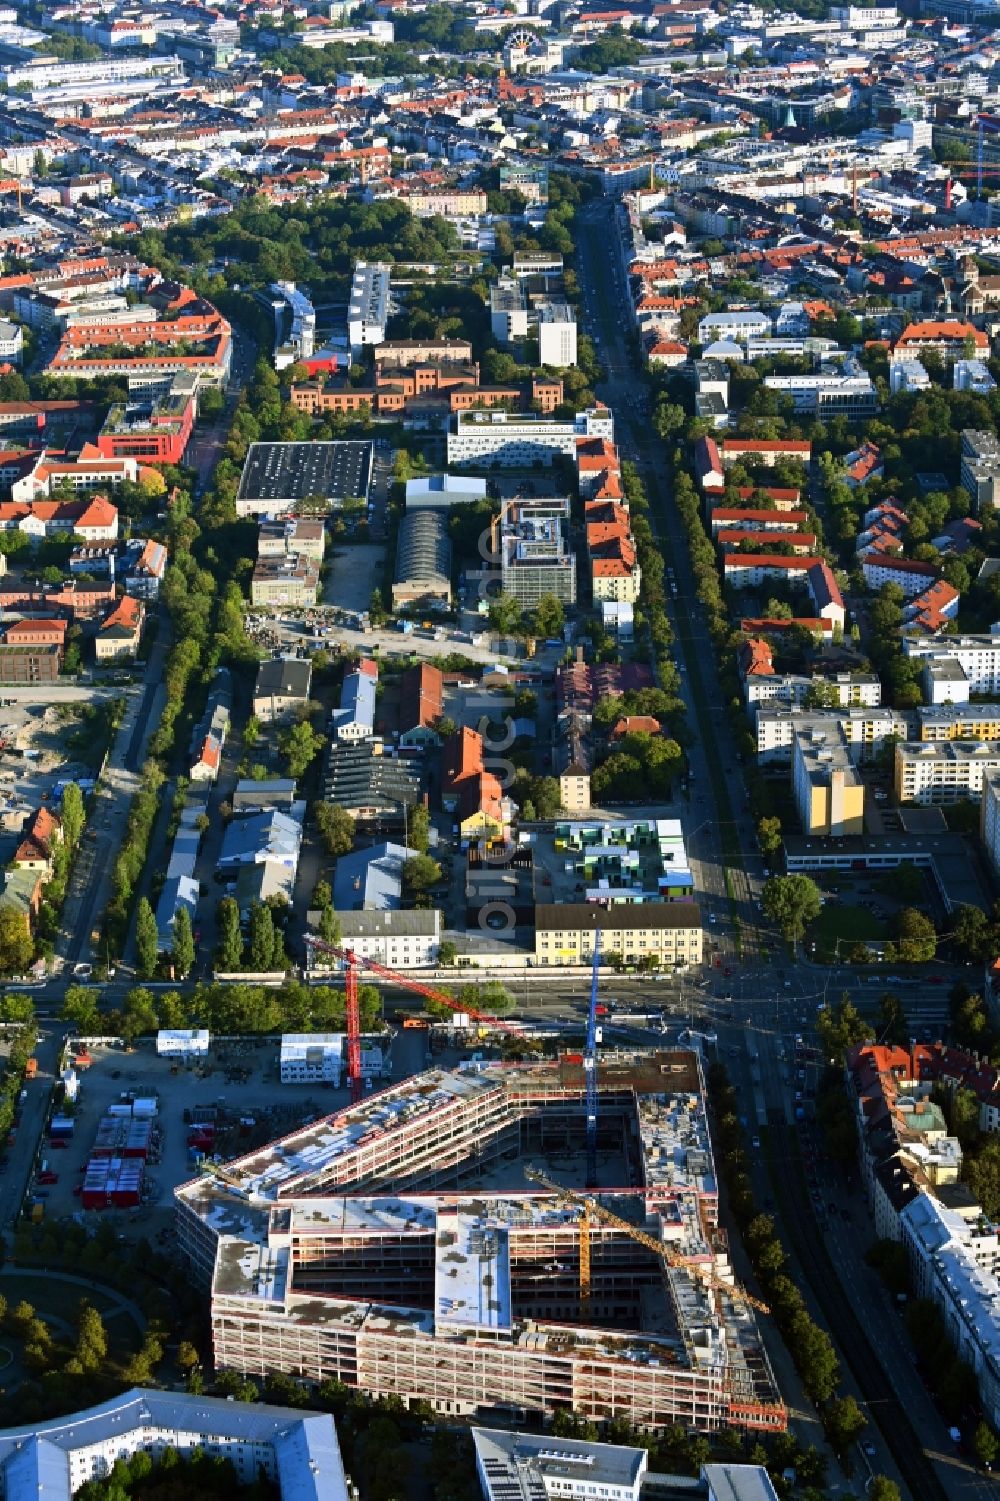 München aus der Vogelperspektive: Baustelle zum Neubau eines Strafjustizzentrum in München im Bundesland Bayern, Deutschland